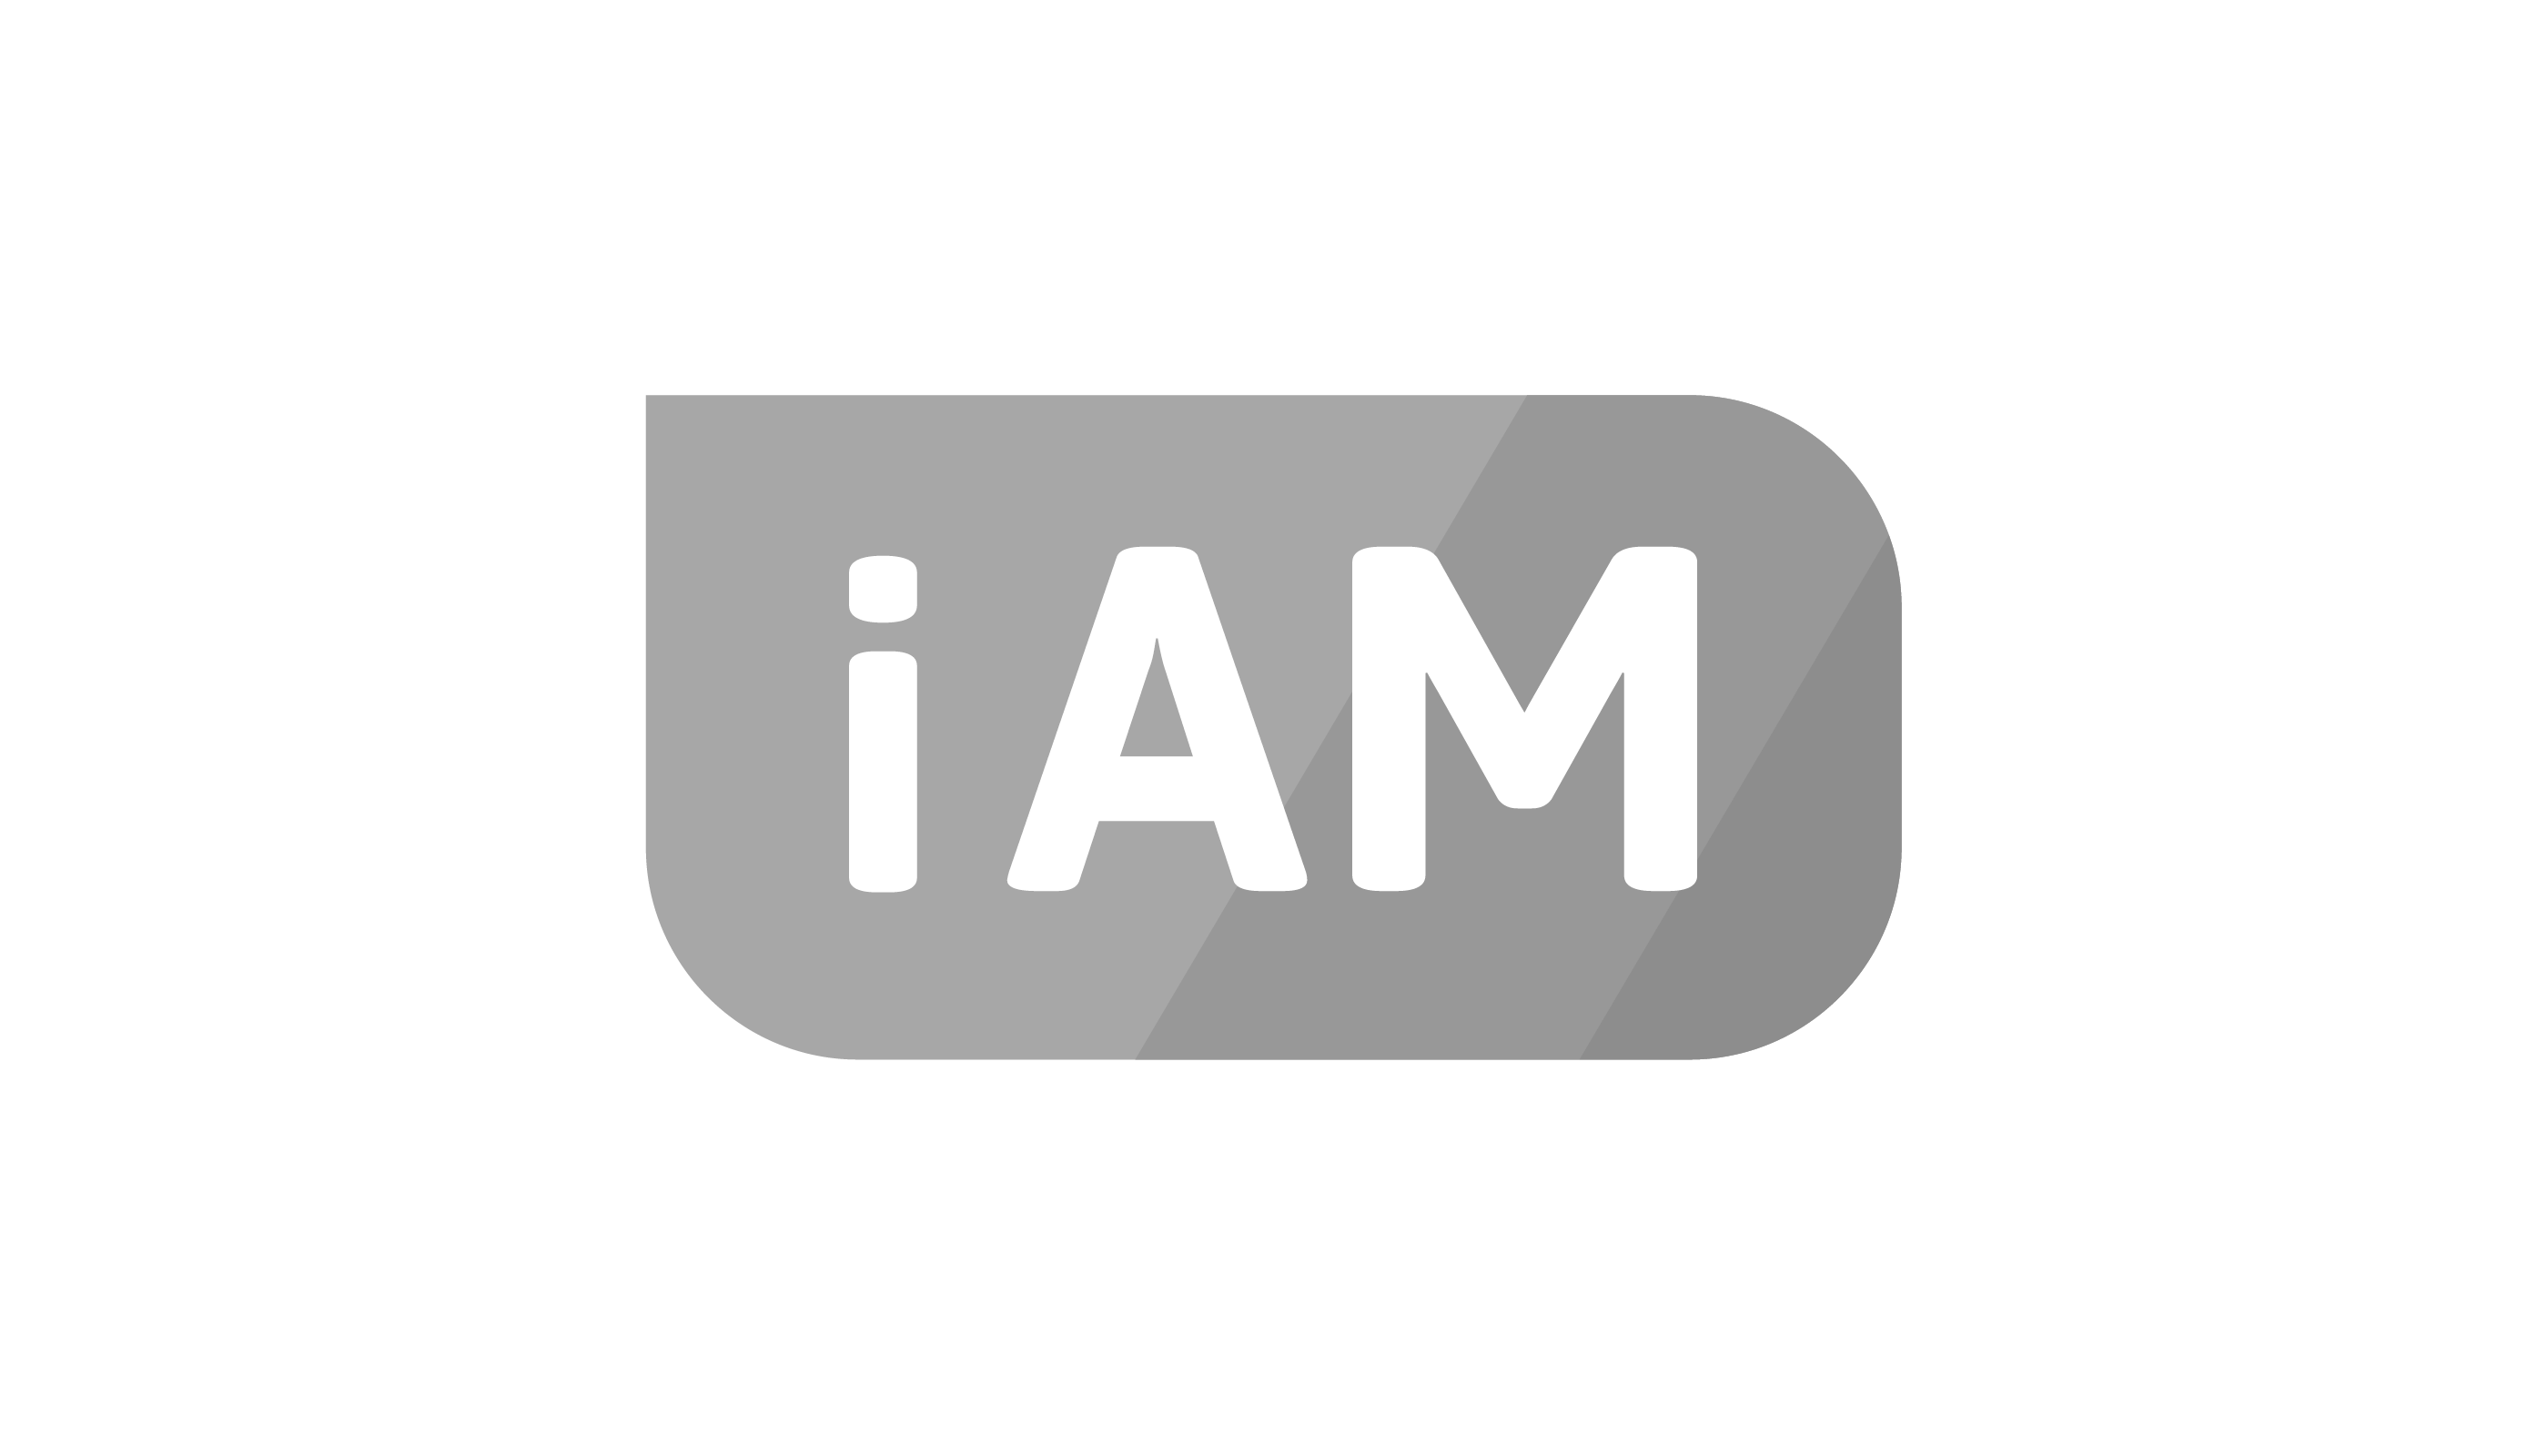 iAM logo